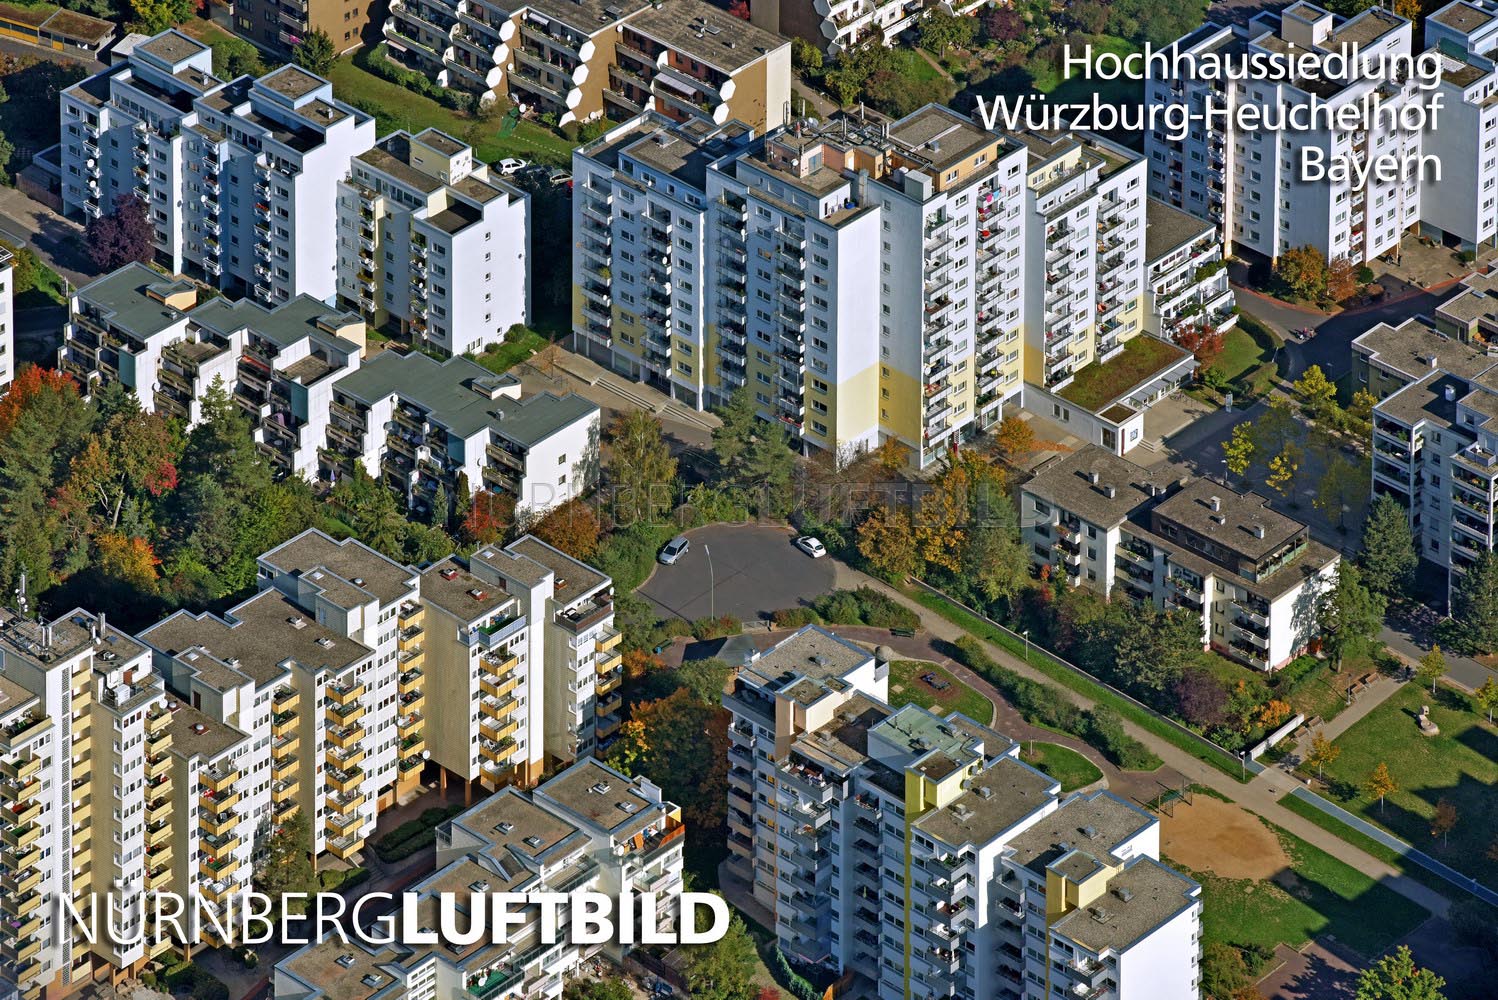 Hochhaussiedlung Würzburg-Heuchelhof, Luftbild